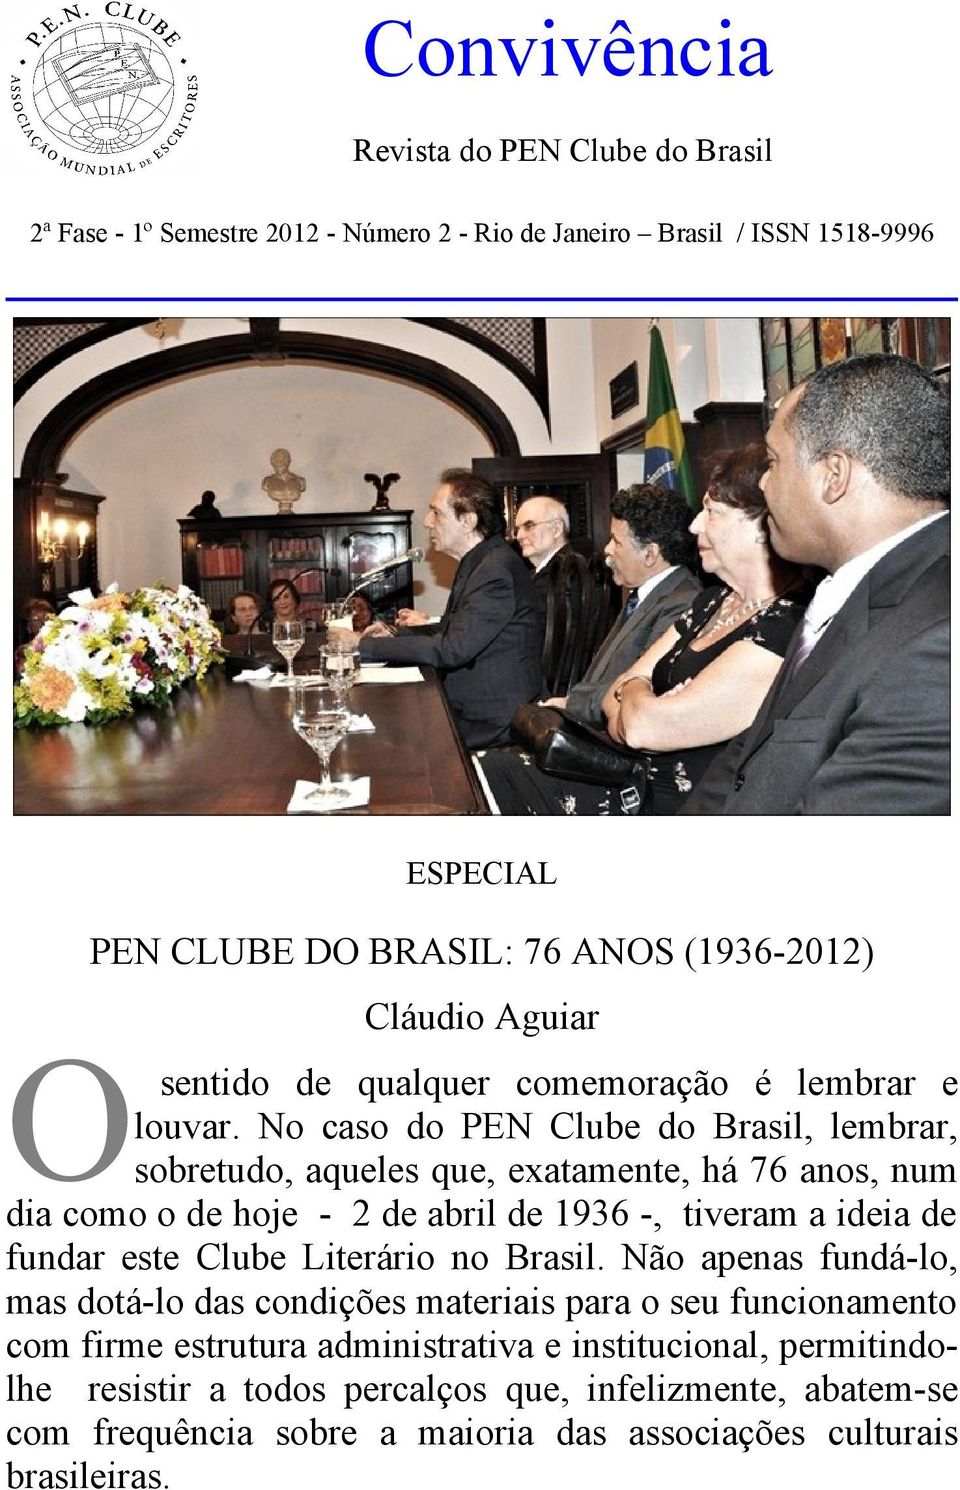 No caso do PEN Clube do Brasil, lembrar, sobretudo, aqueles que, exatamente, há 76 anos, num dia como o de hoje - 2 de abril de 1936 -, tiveram a ideia de fundar este Clube